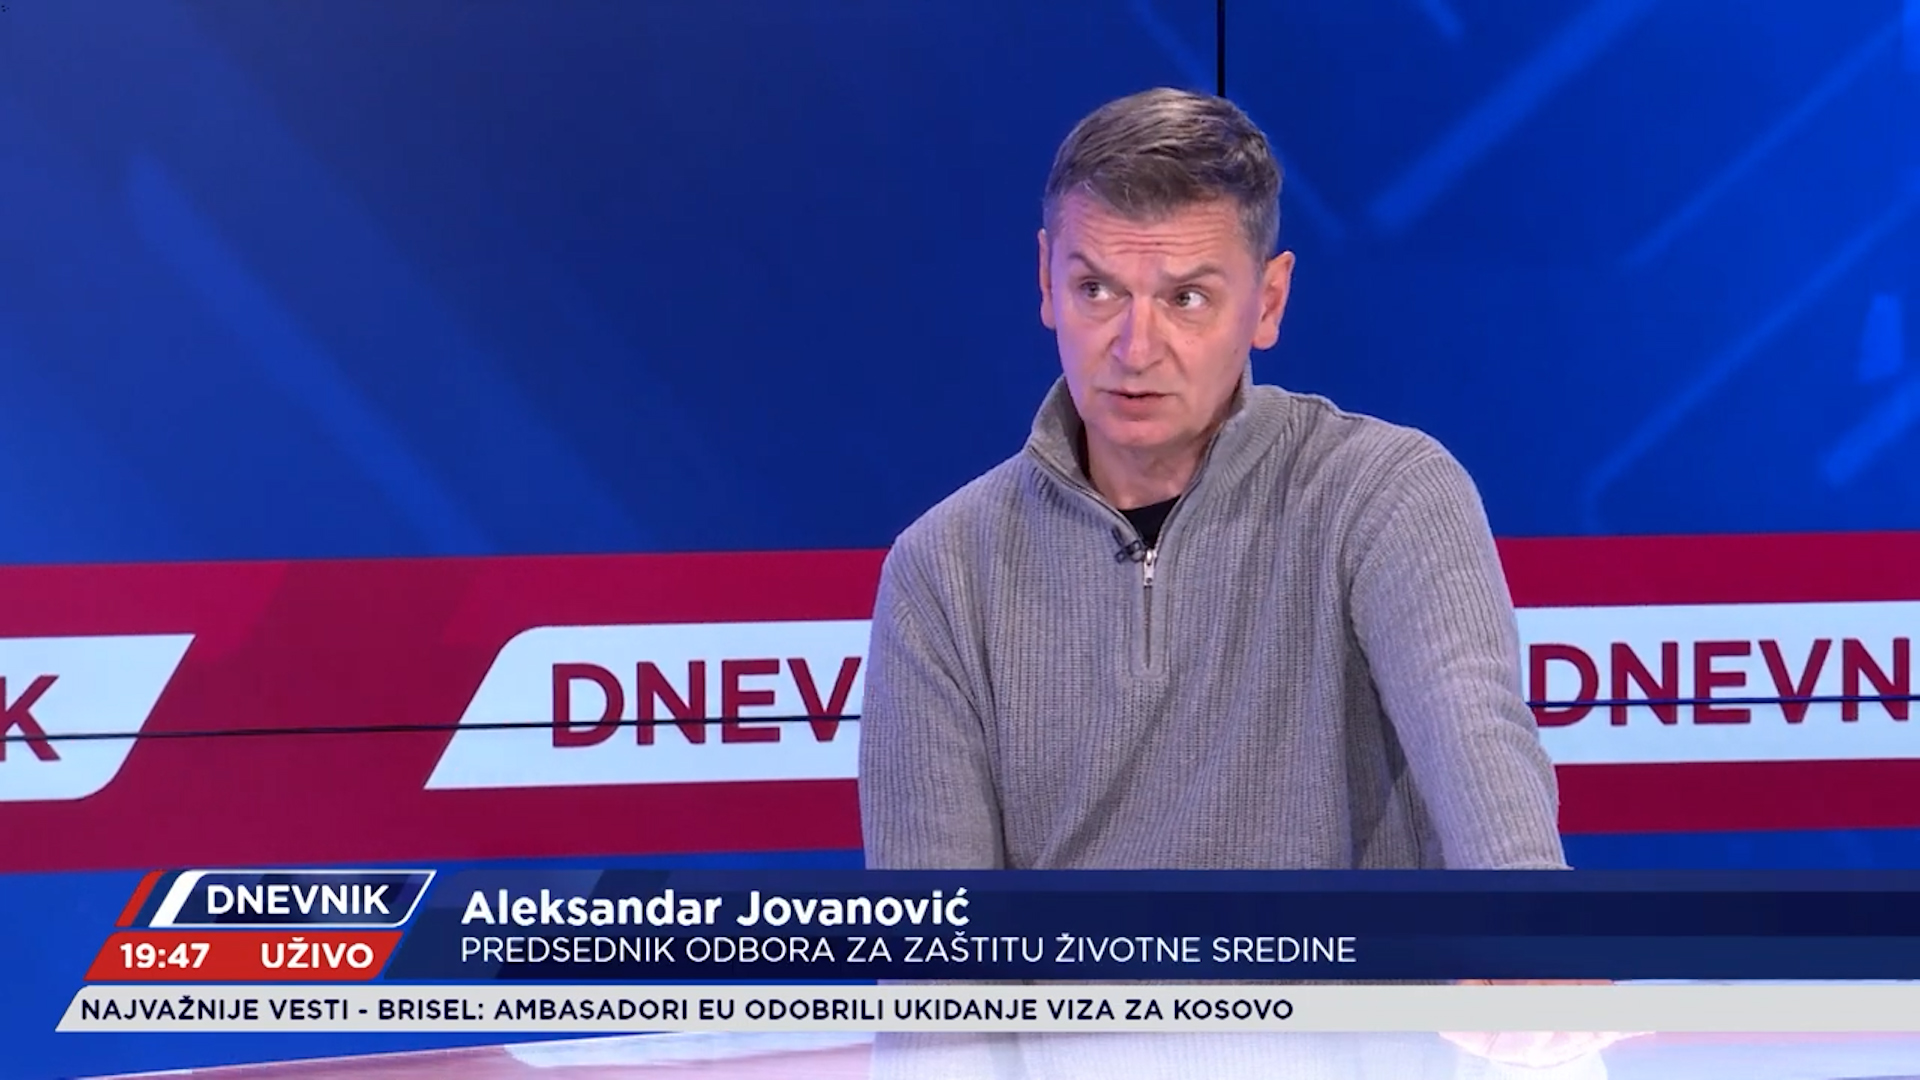 GOST Predsednik Odbora za zaštitu životne sredine Aleksandar Jovanović Ćuta